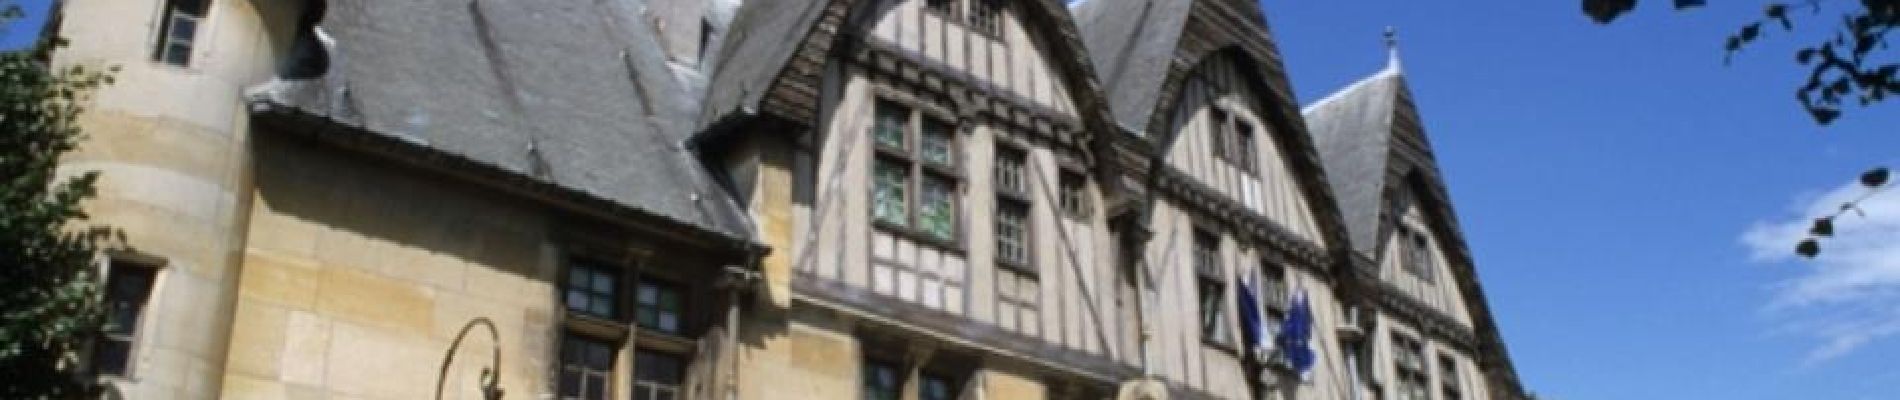 Point of interest Reims - Musée Hôtel Le Vergeur - Photo